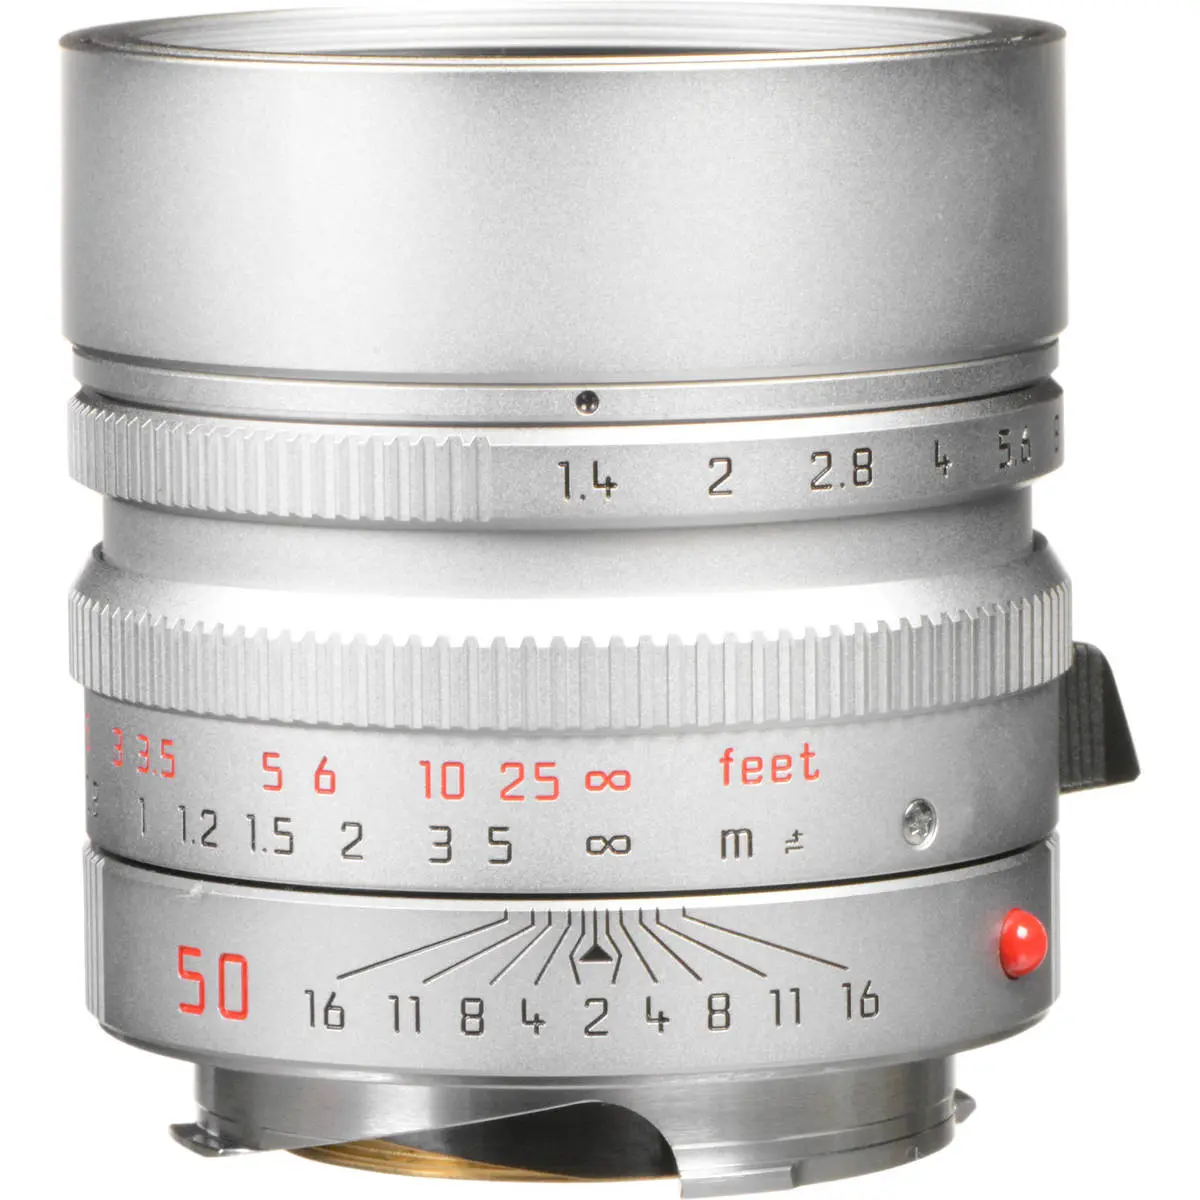 LEICA SUMMILUX-M 50 mm f/1.4 ASPH Silver Lens